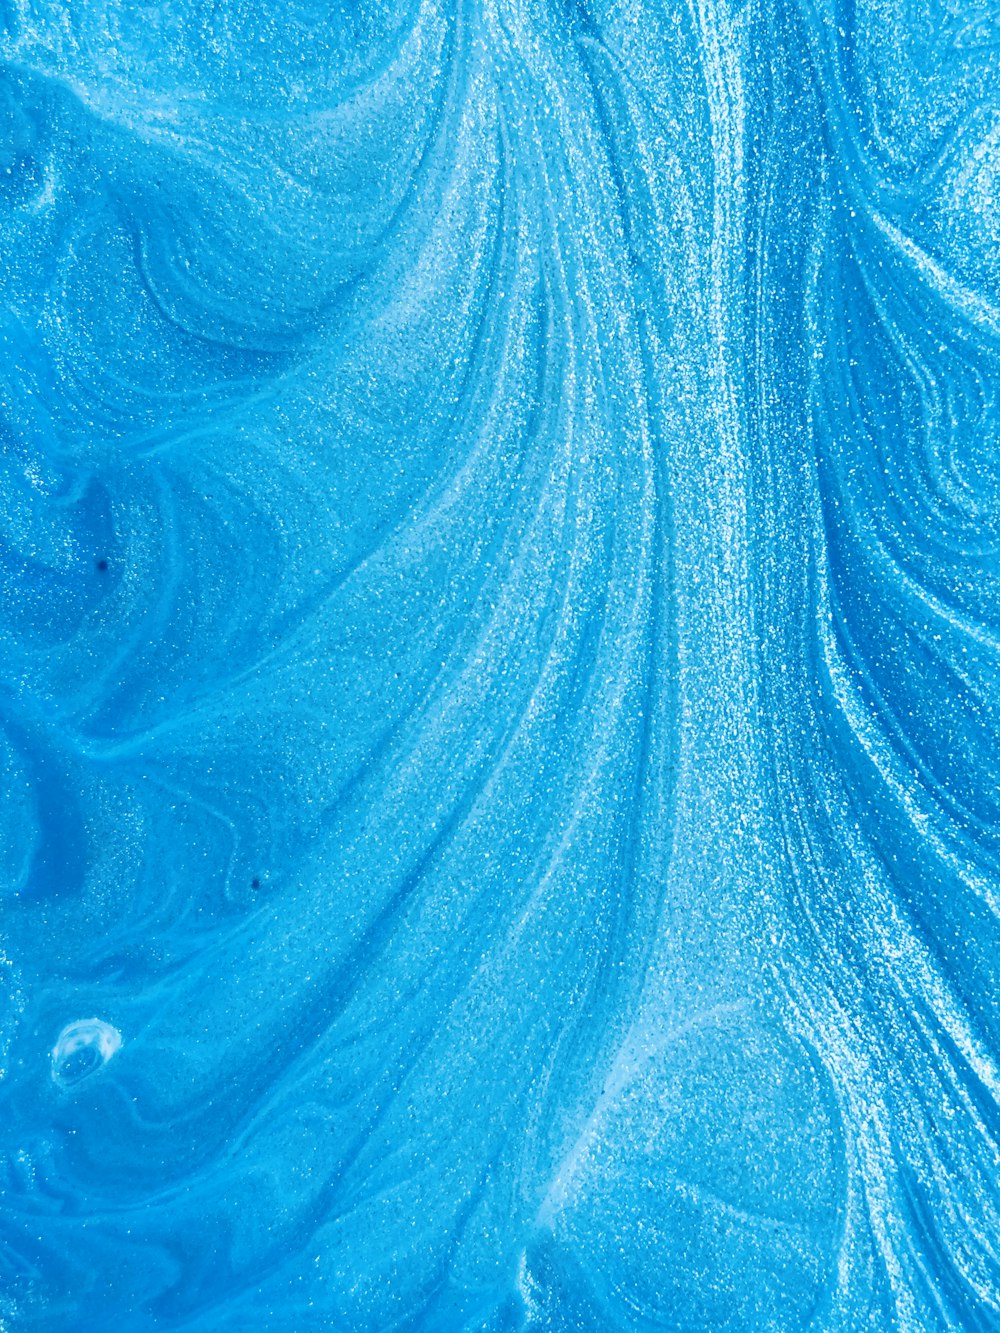 Blue Wallpapers Free Hd Download 500 Hq Unsplash